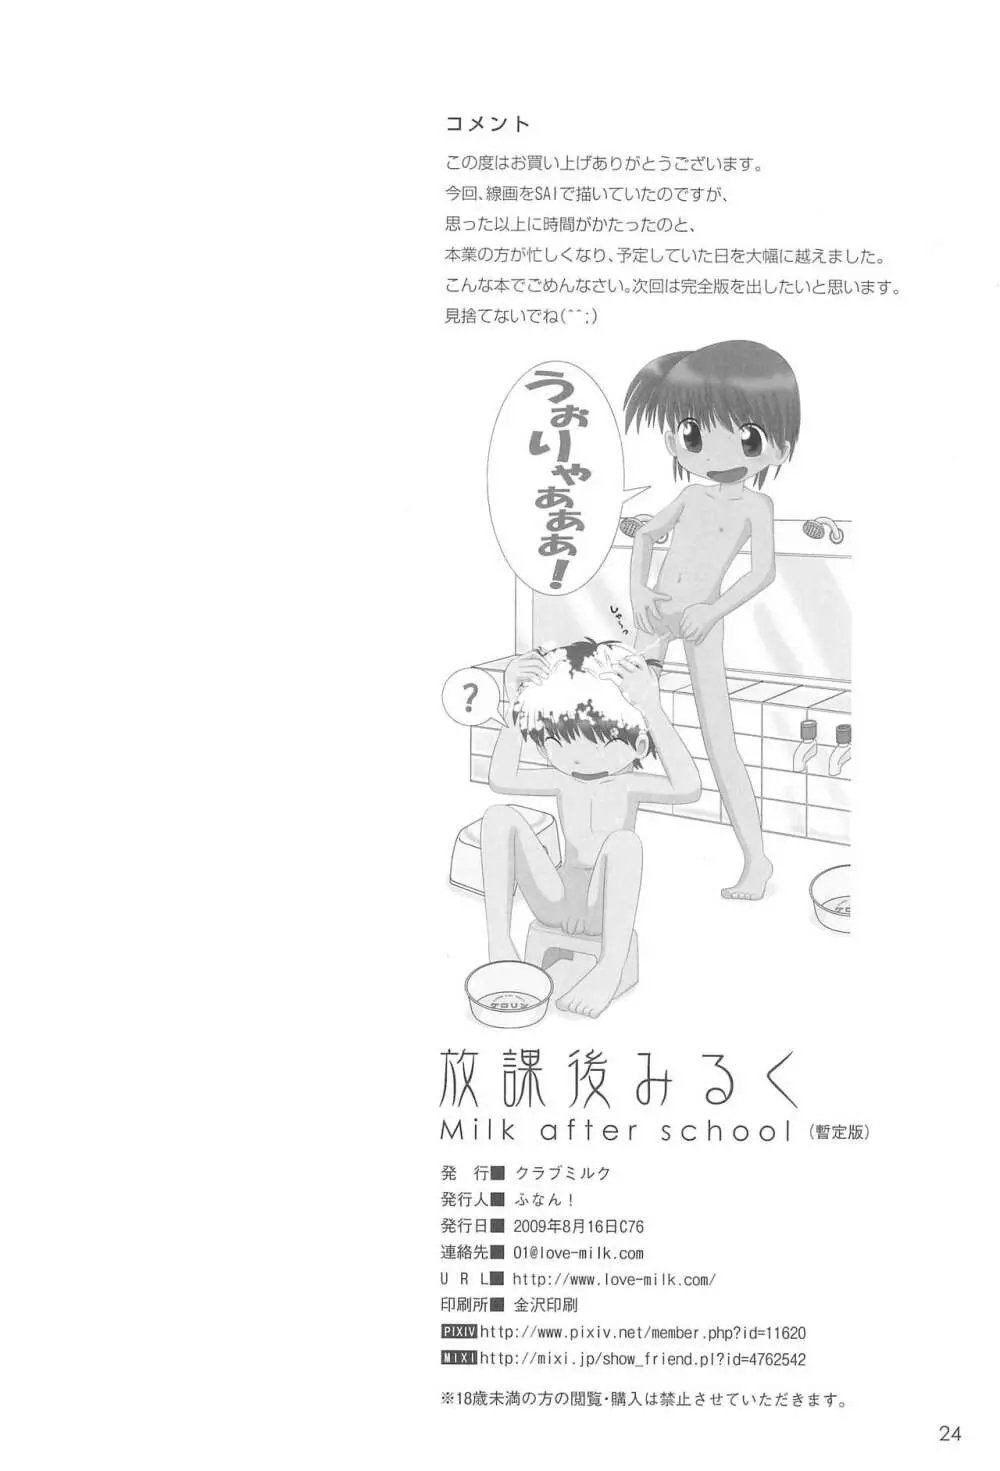 放課後みるく – Milk After School – 28ページ